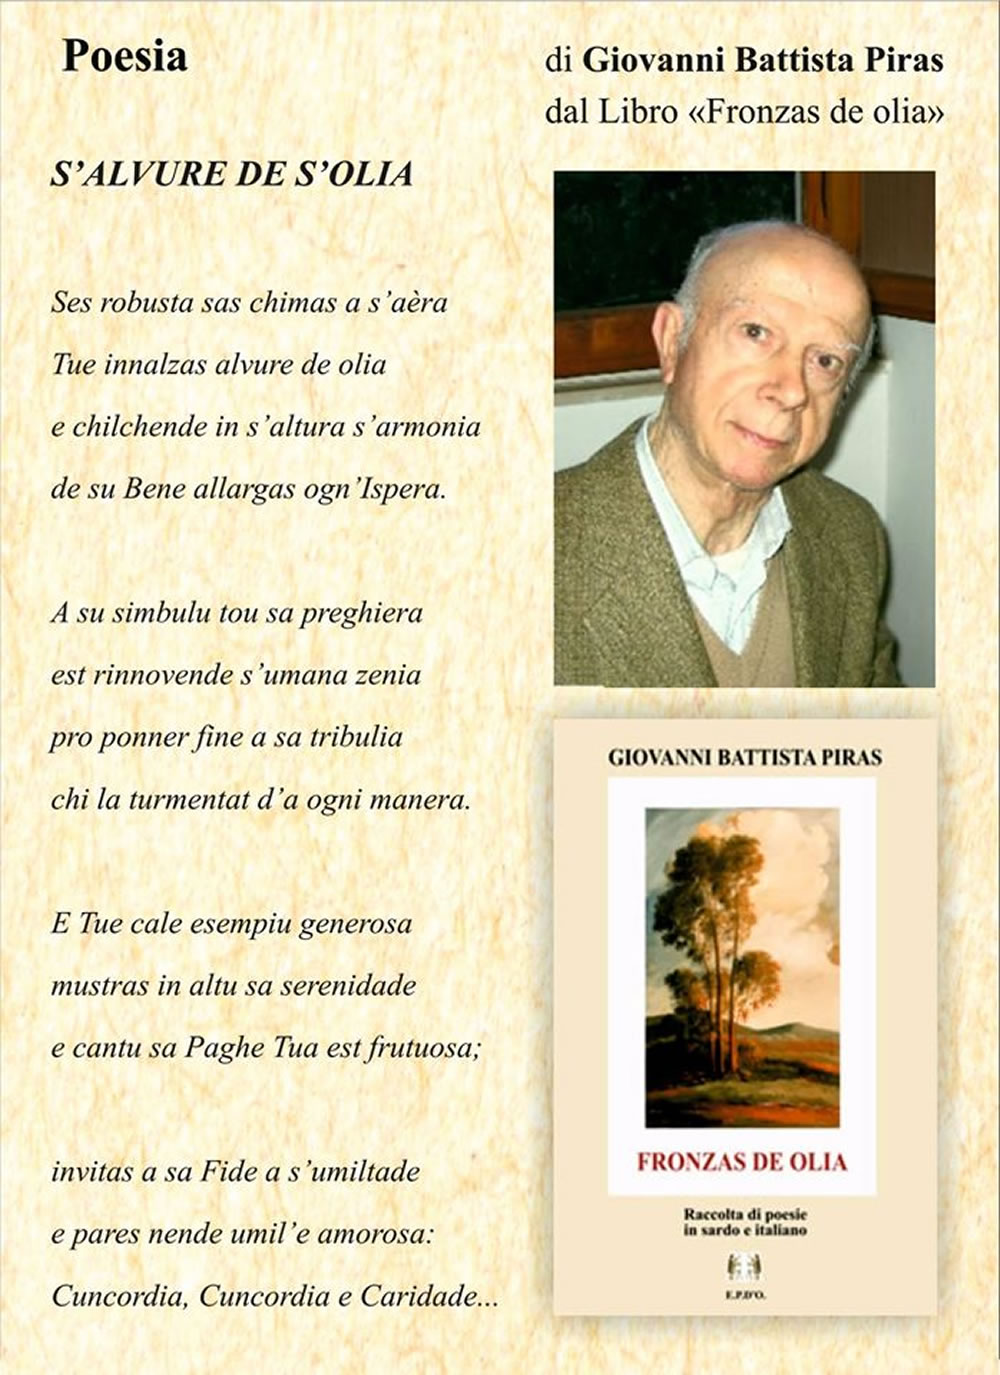 Poesia Giovanni Battista Piras